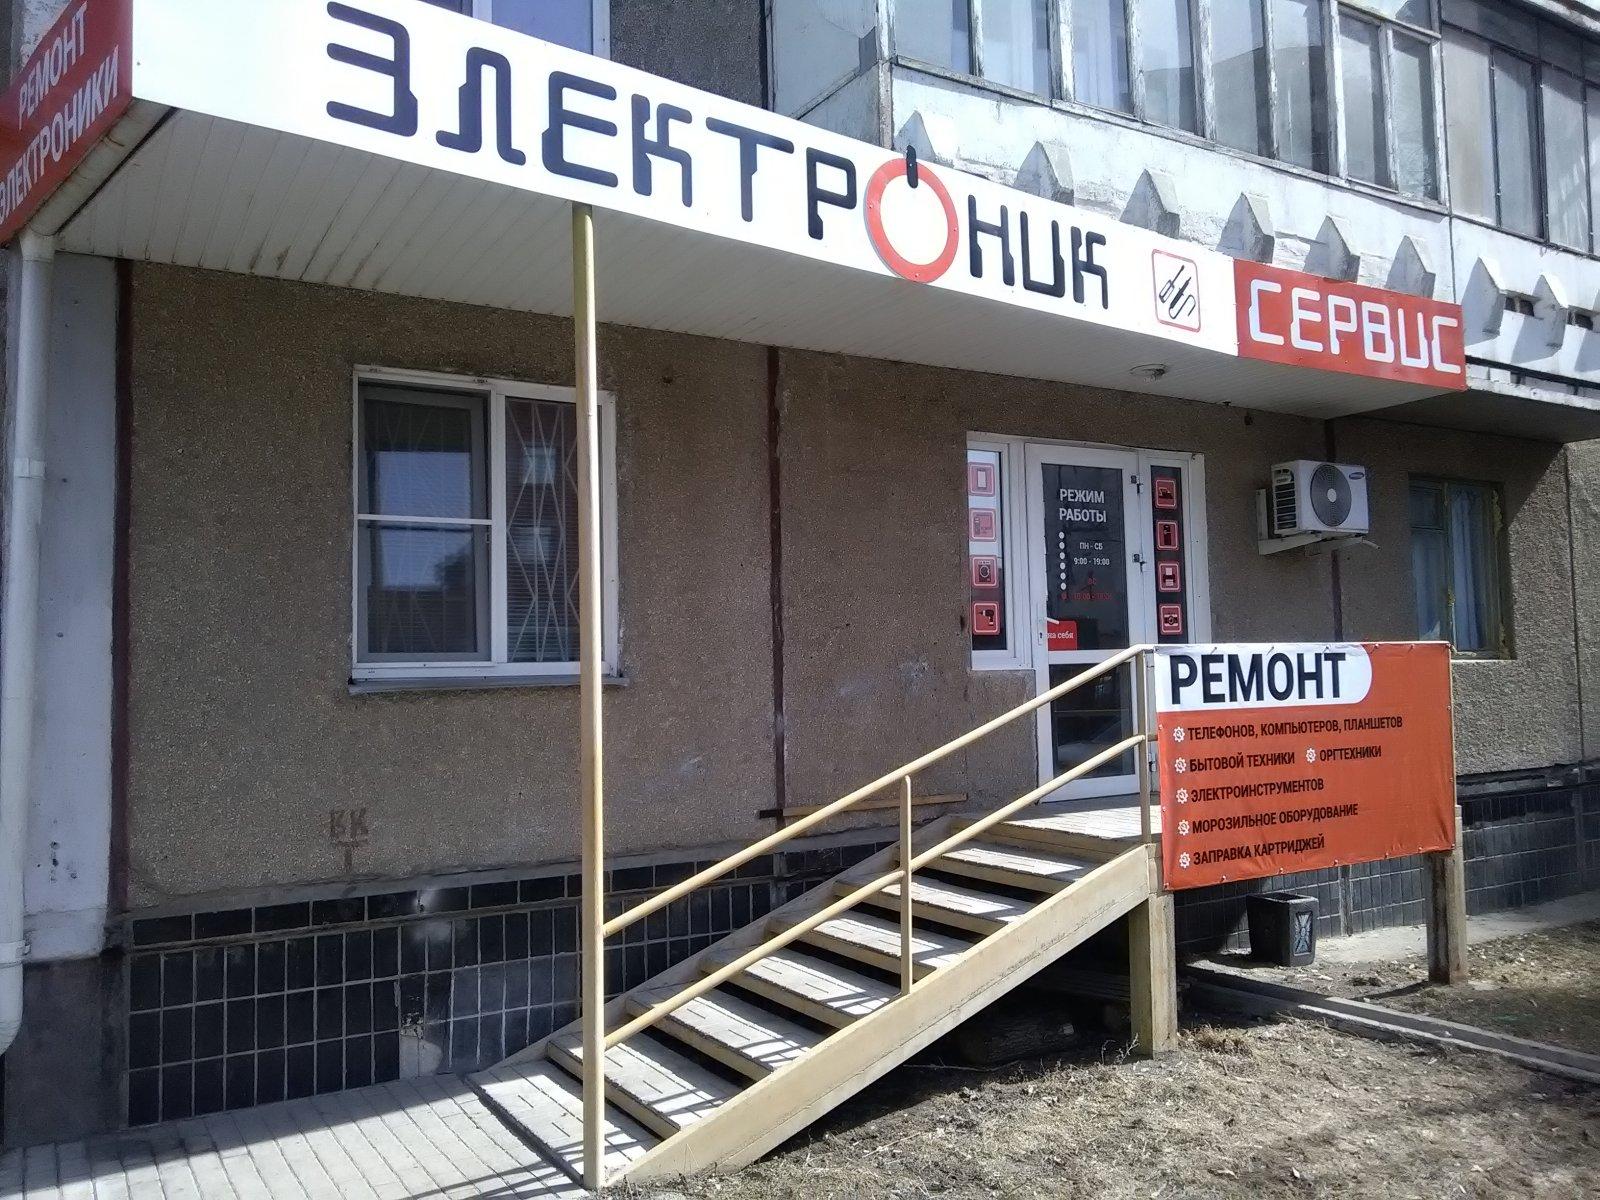 Сервисный центр в Челябинске. Дом одежды сервисный центр электроник. Челябинск ремонт сайт